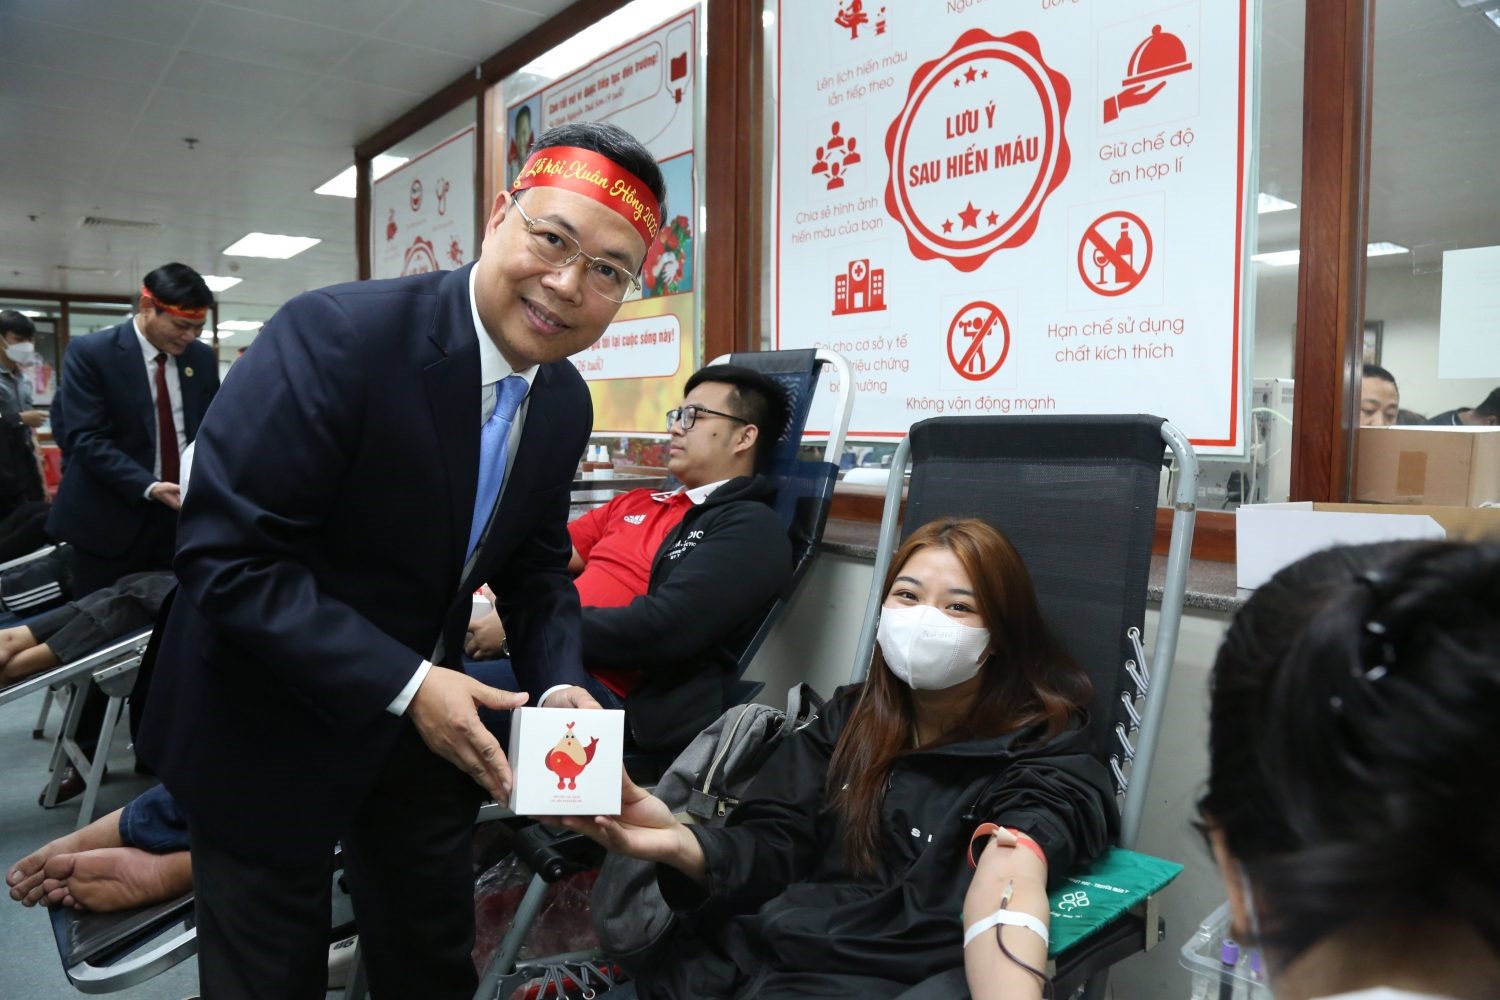 PGS.TS. Nguyễn Hà Thanh, Viện trưởng Viện Huyết học - Truyền máu Trung ương tặng quà lưu niệm cảm ơn người hiến máu. Ảnh: Gia Thắng